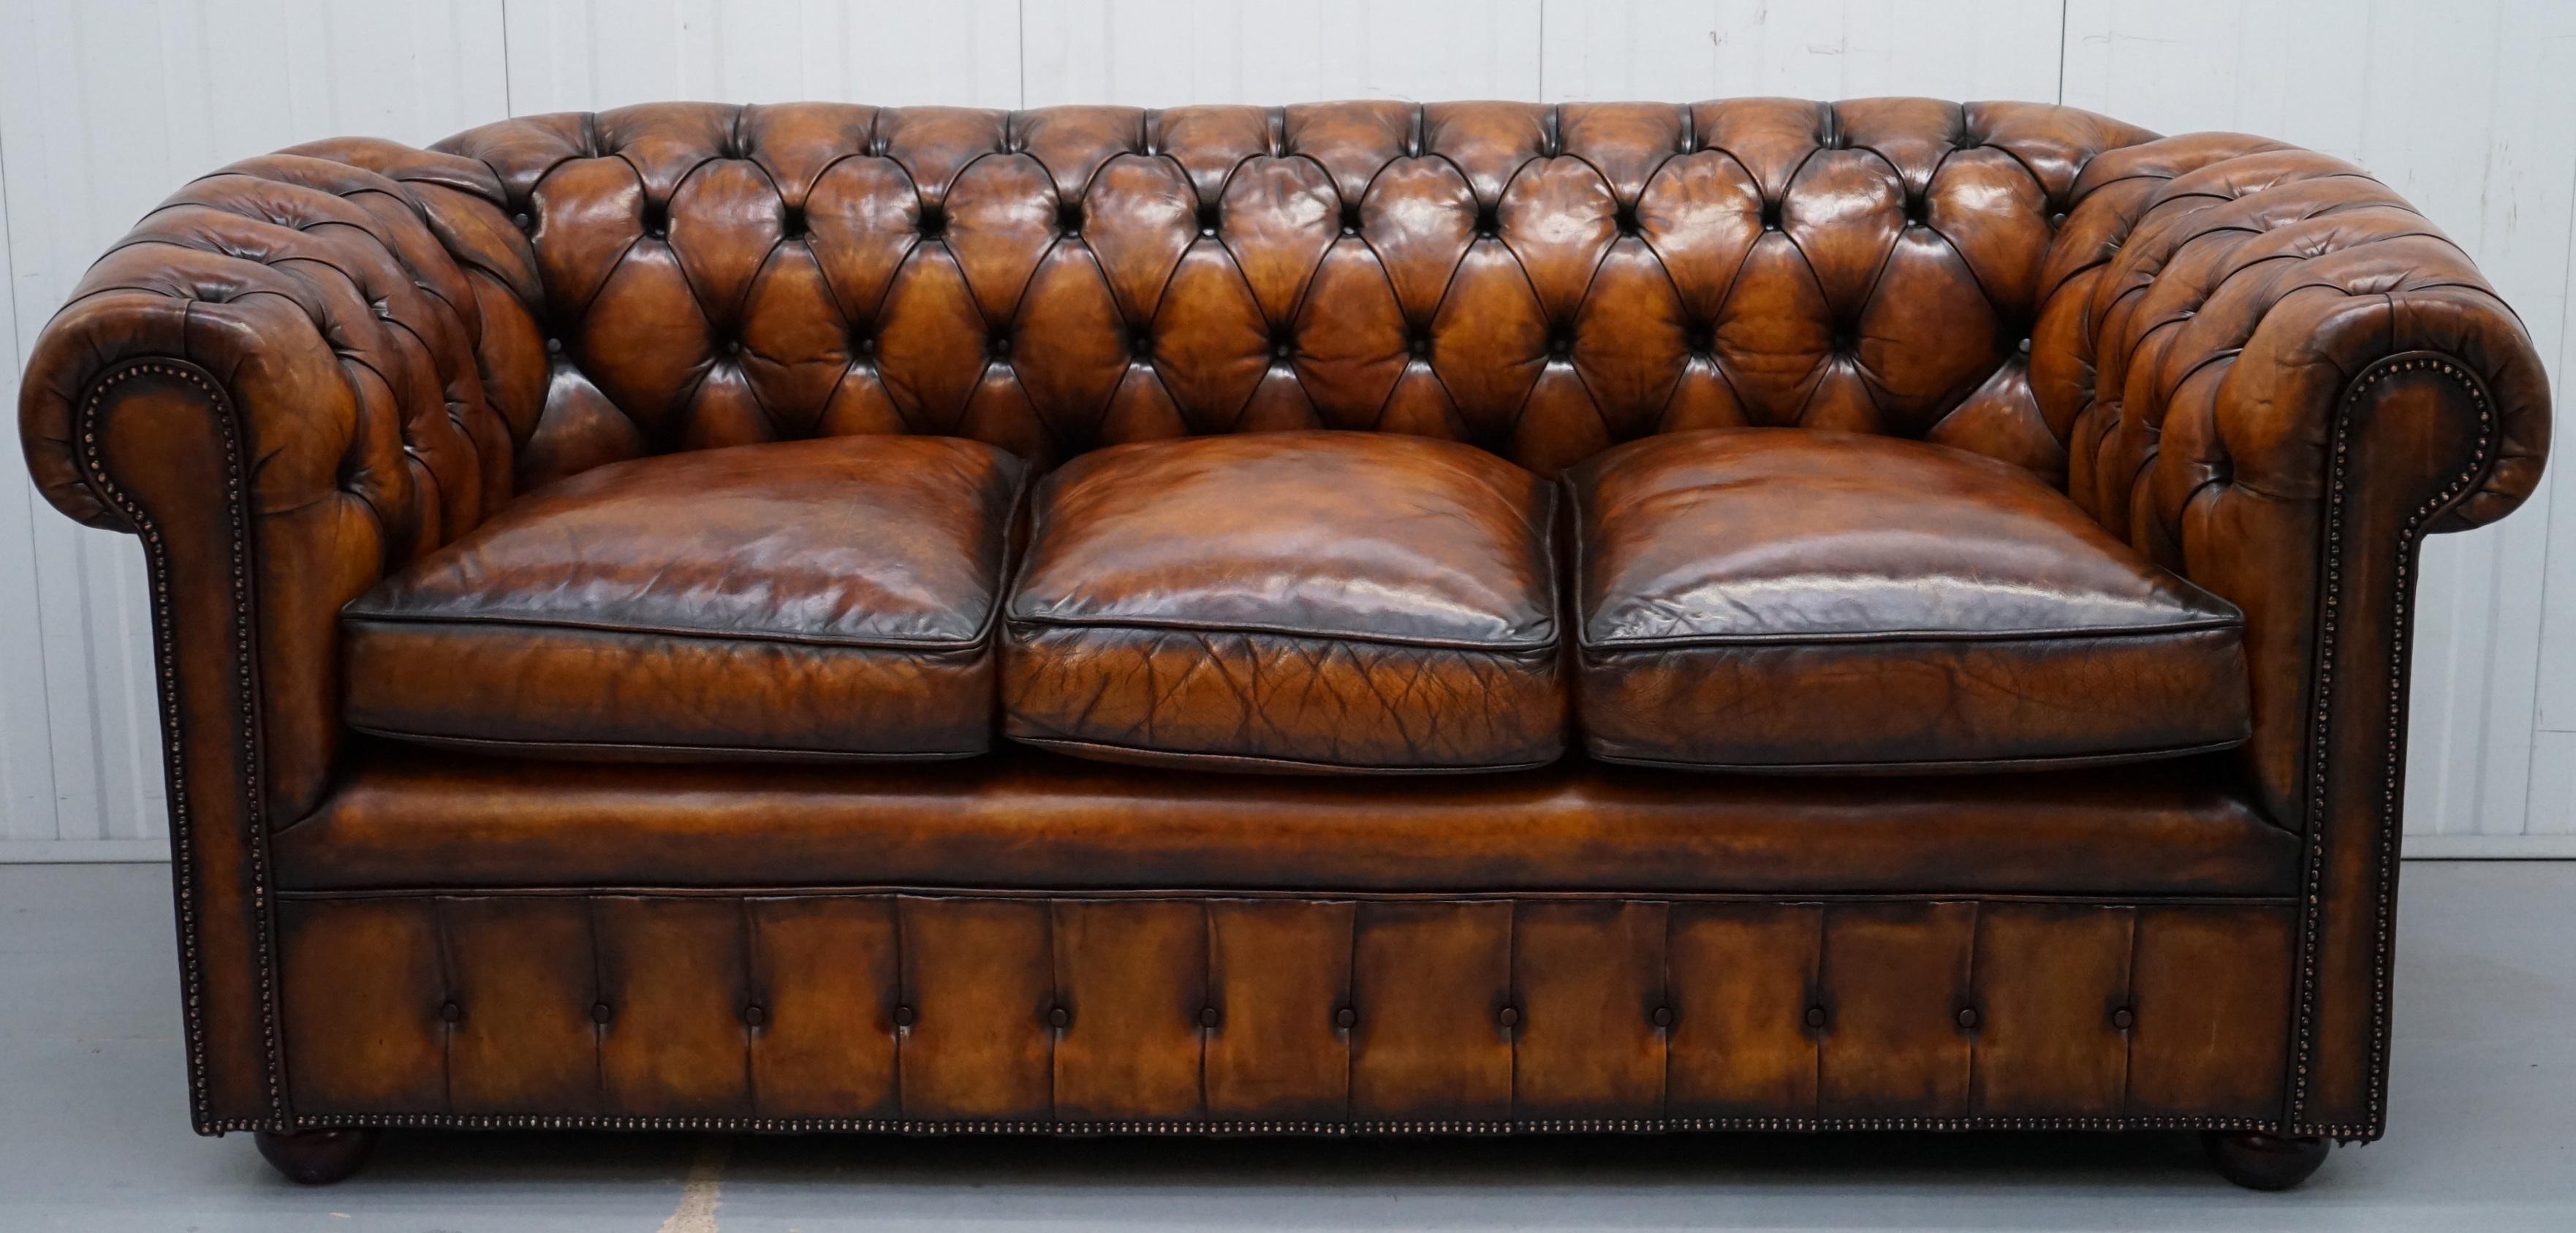 Wir freuen uns, dieses außergewöhnlich seltene originale Chesterfield-Club-Sofa aus den 1930er Jahren in Whisky-braunem Leder in frisch restauriertem Zustand mit federgefüllten Kissen zur Versteigerung anbieten zu können 

Ich habe noch ein